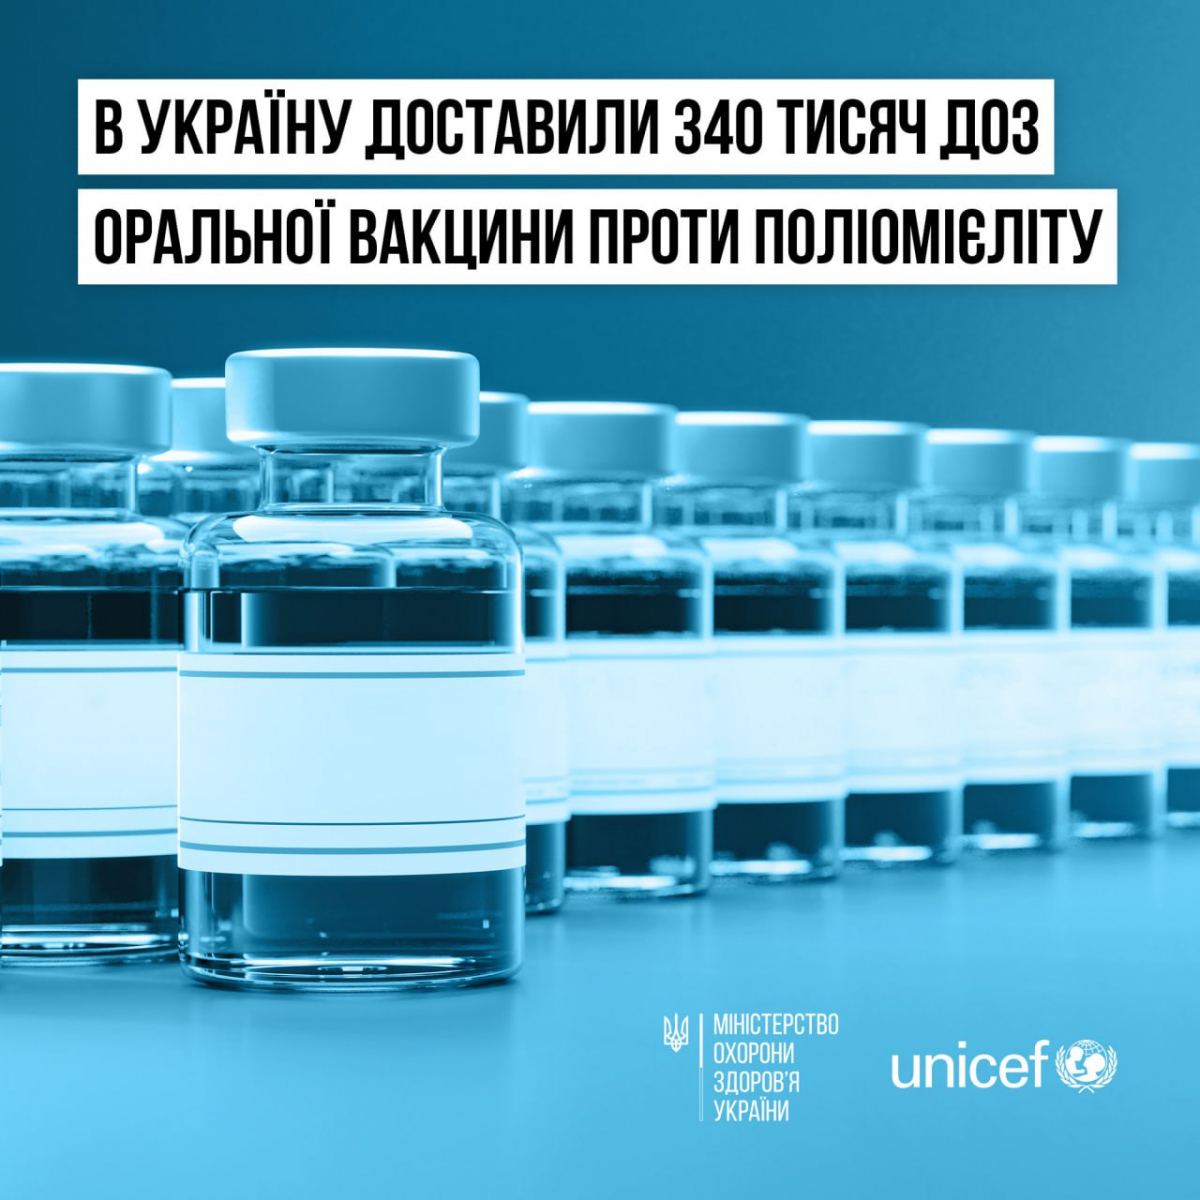 В Україну доставили 340 тисяч доз оральної вакцини проти поліомієліту